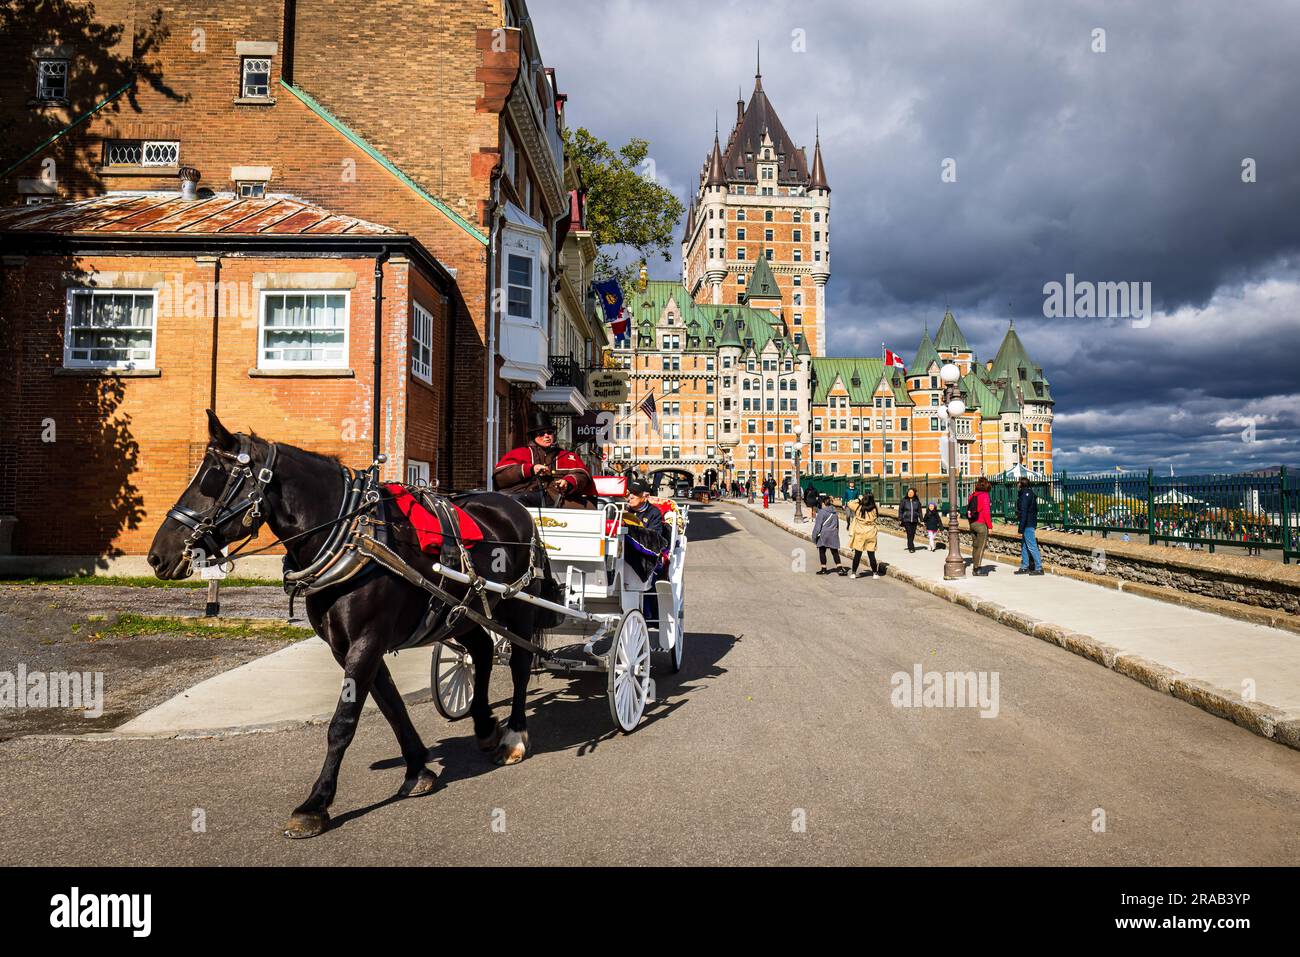 Quebec, vista del castello Frontenac, l'edificio emblematico della città. Foto Stock